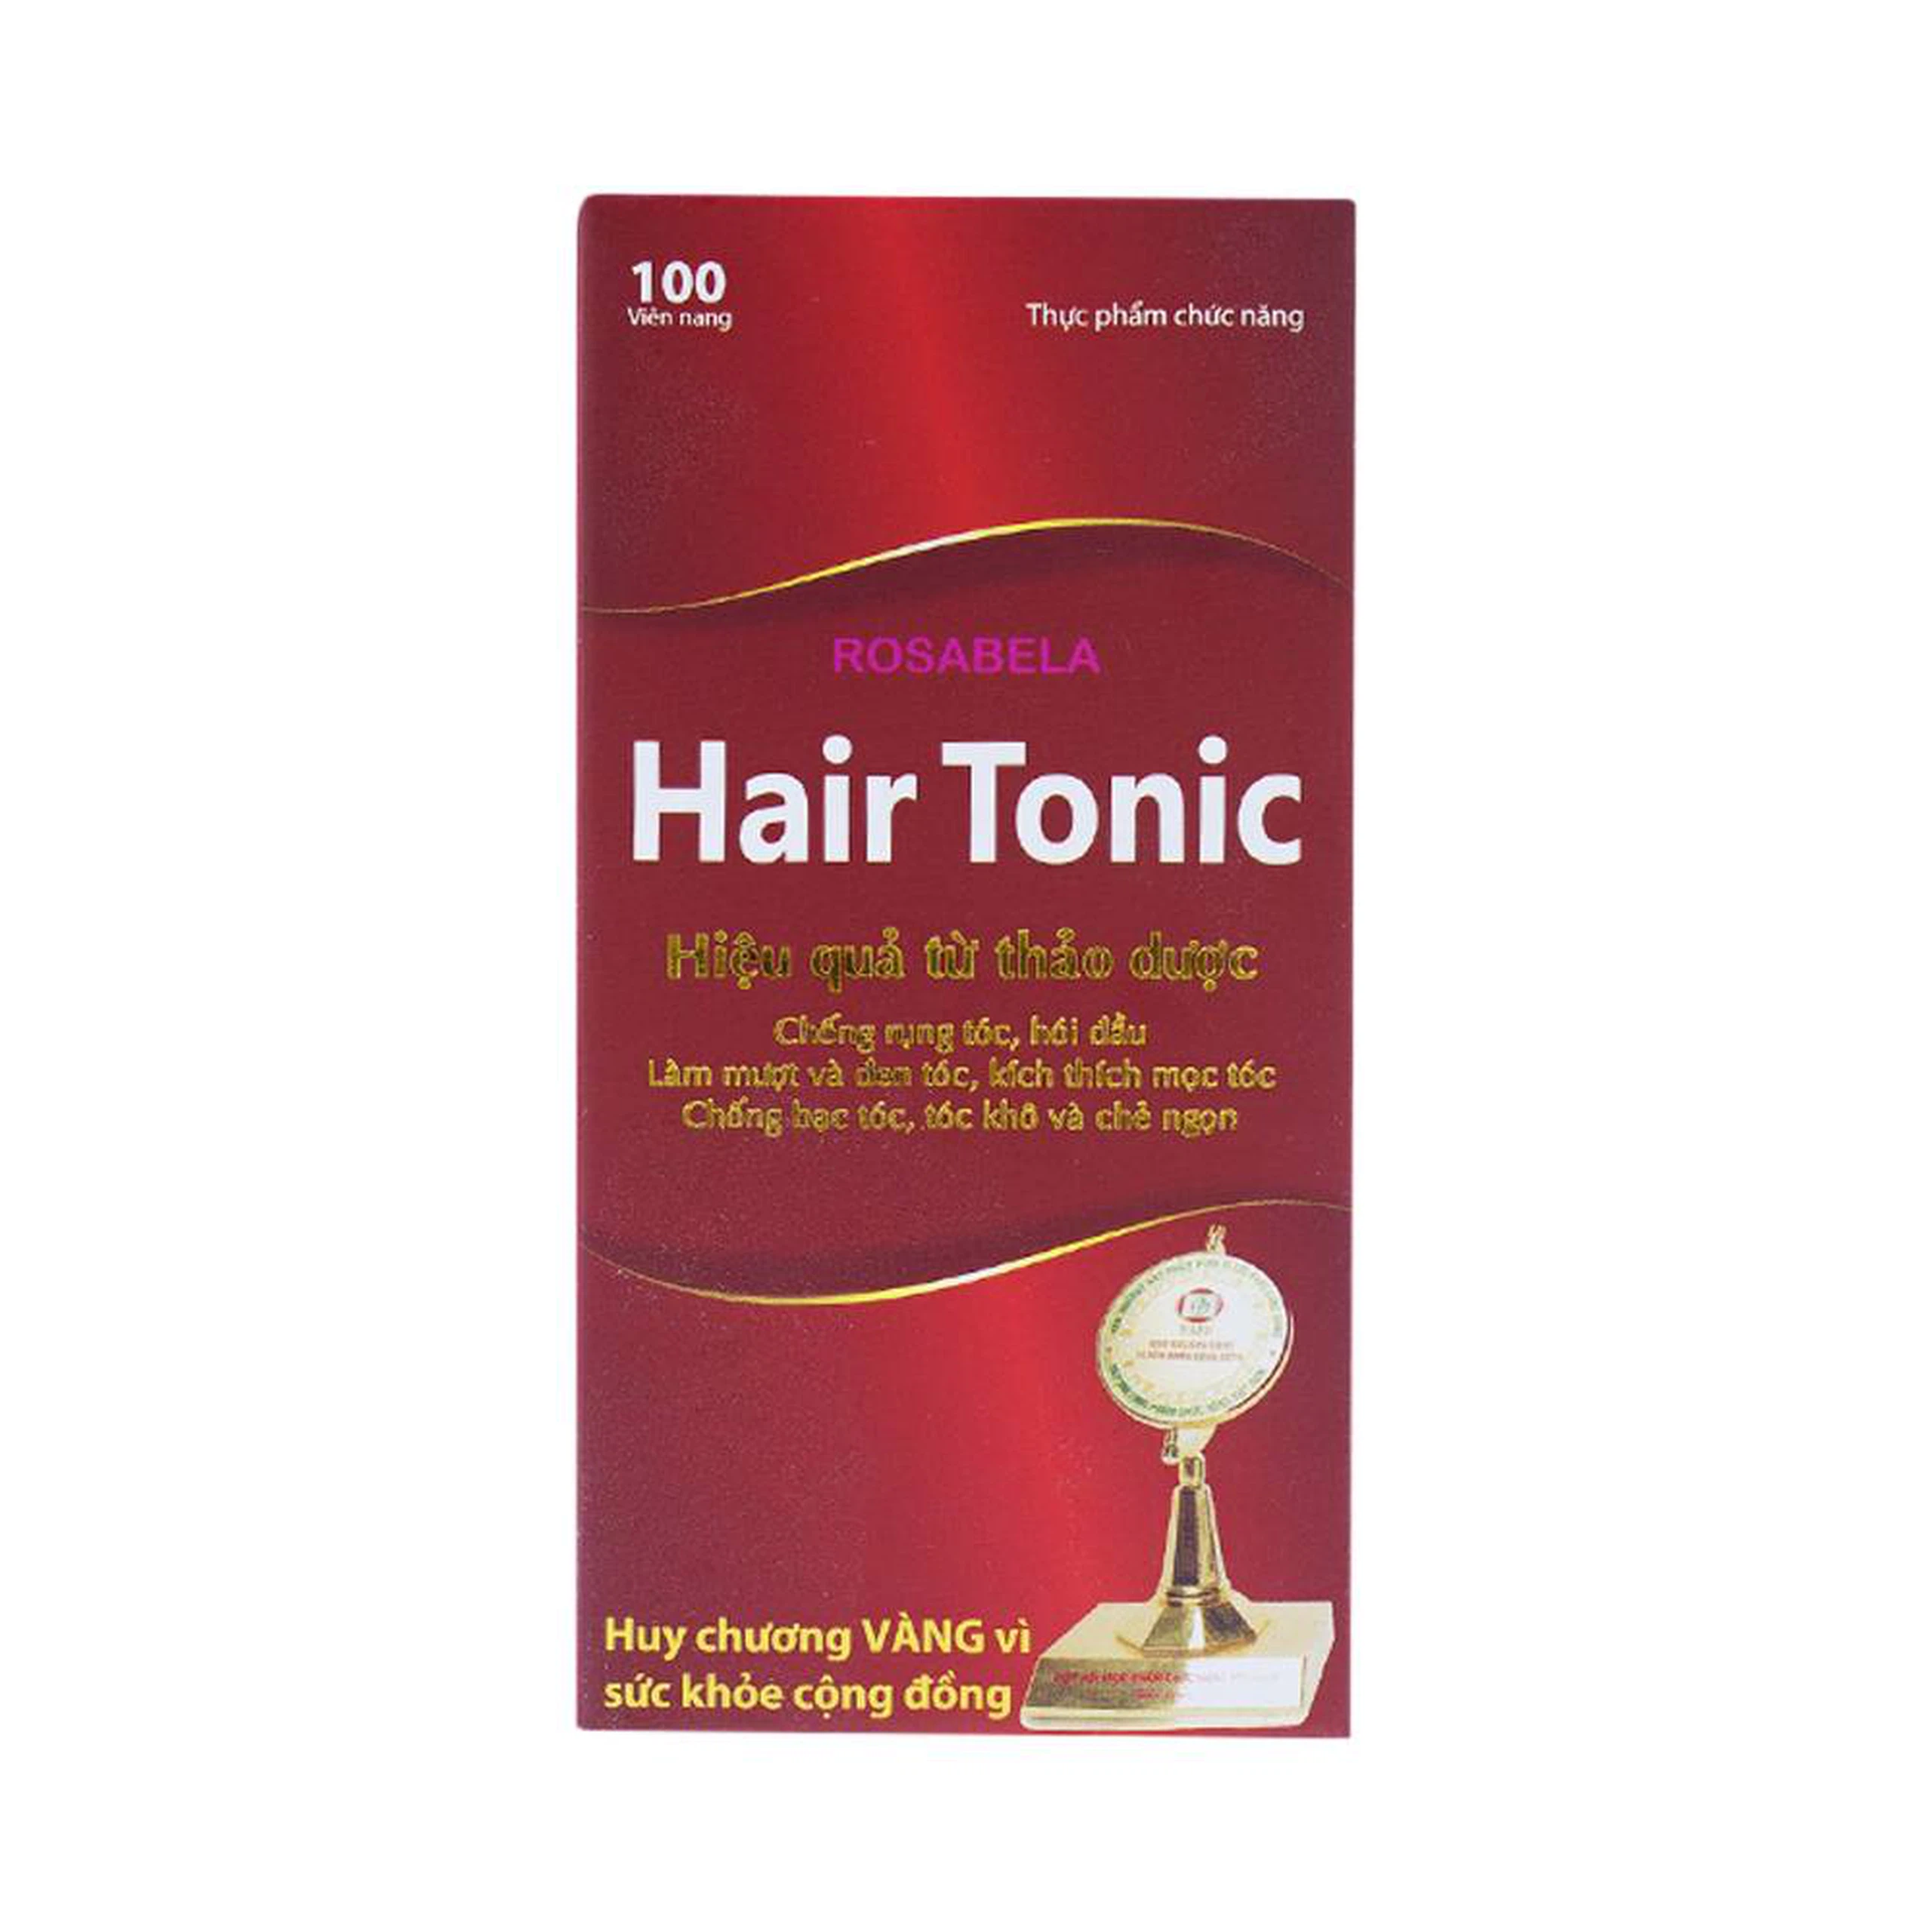 Viên uống Hair Tonic Rosabela chống rụng tóc, hói đầu (100 viên)